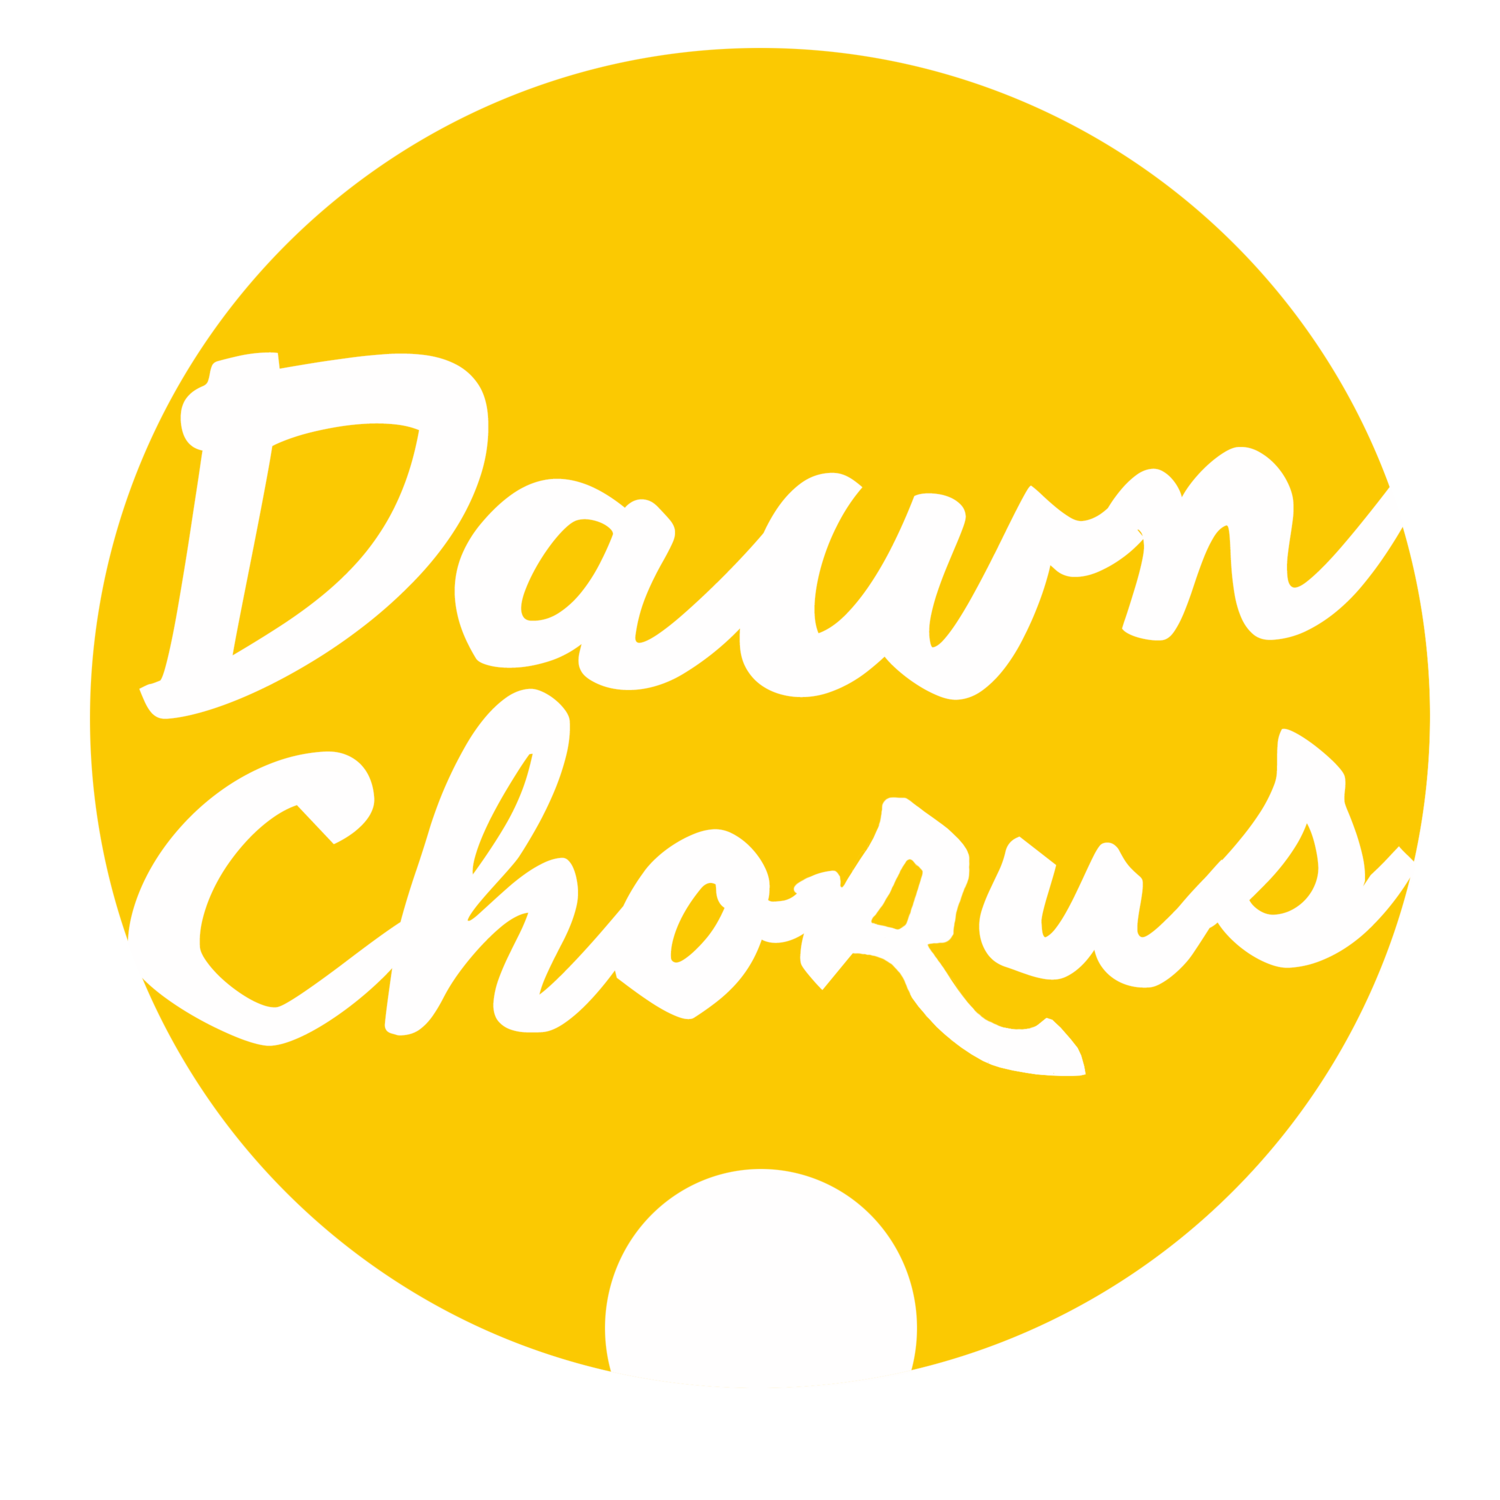 Dawn Chorus Creative